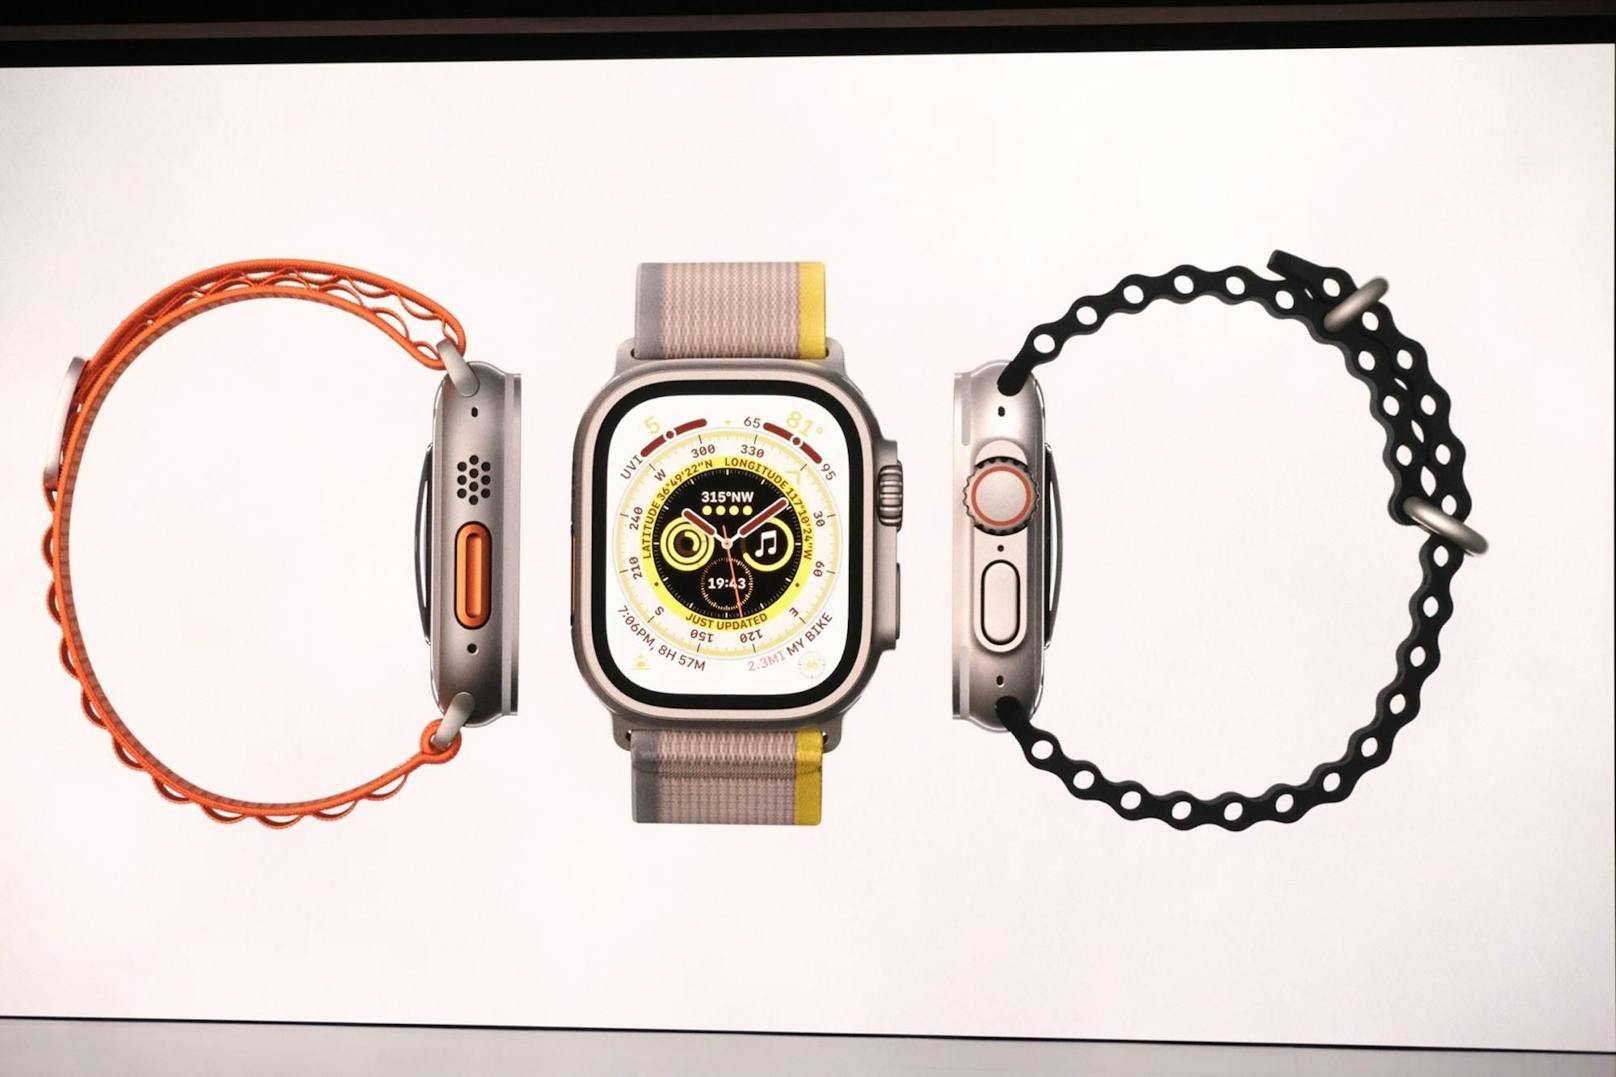 Die dritte neue Apple Watch heißt Ultra. Sie ist besonders für Extremsportlerinnen und Extremsportler gedacht. Die Uhr hat ein Gehäuse aus Titan und ein besonders helles Display.